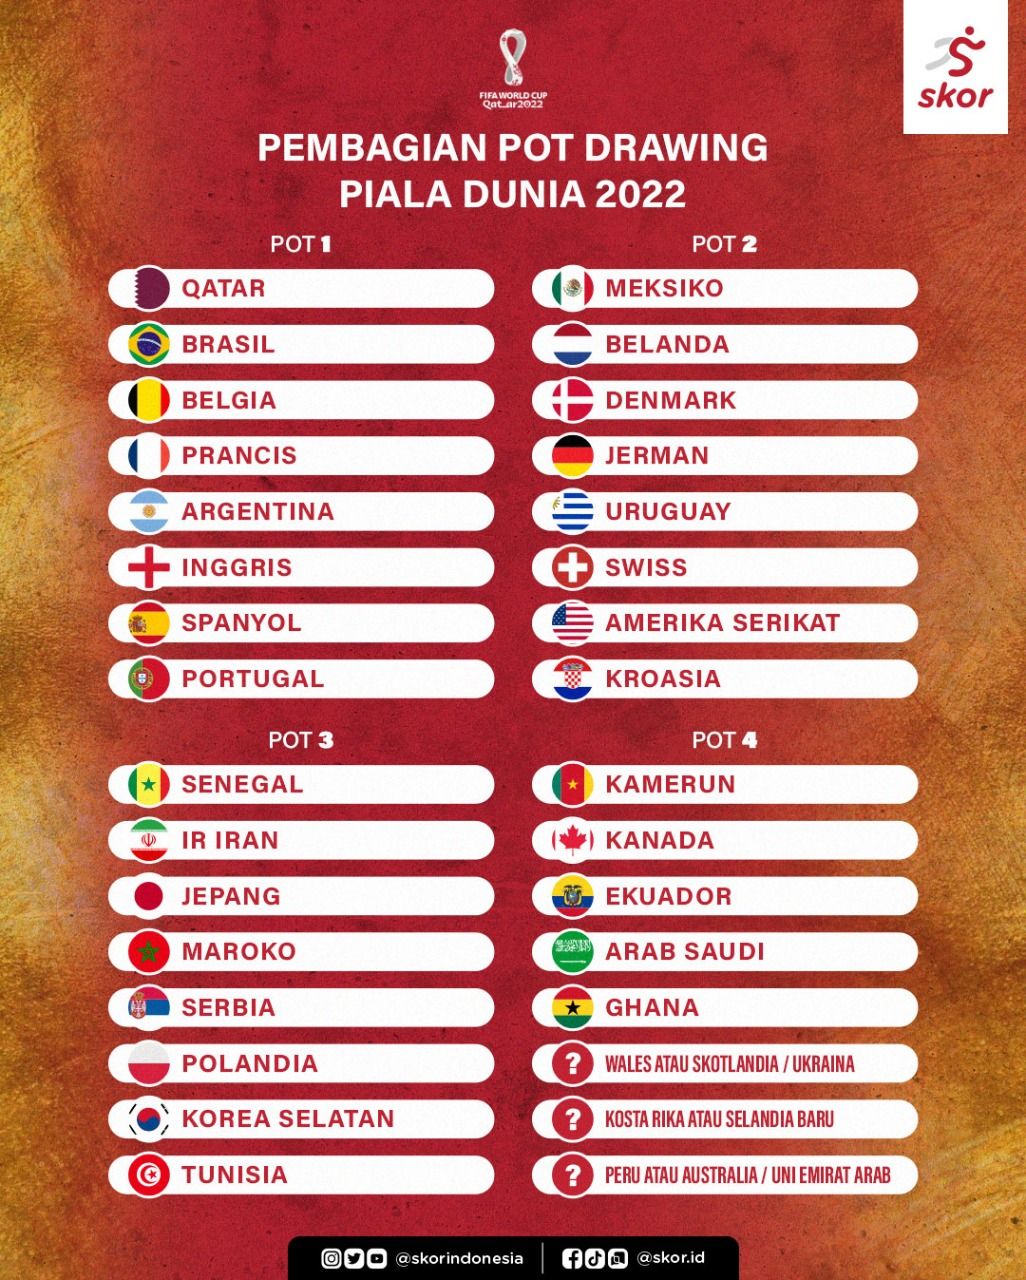 Pembagian Pot Drawing Piala Dunia 2022